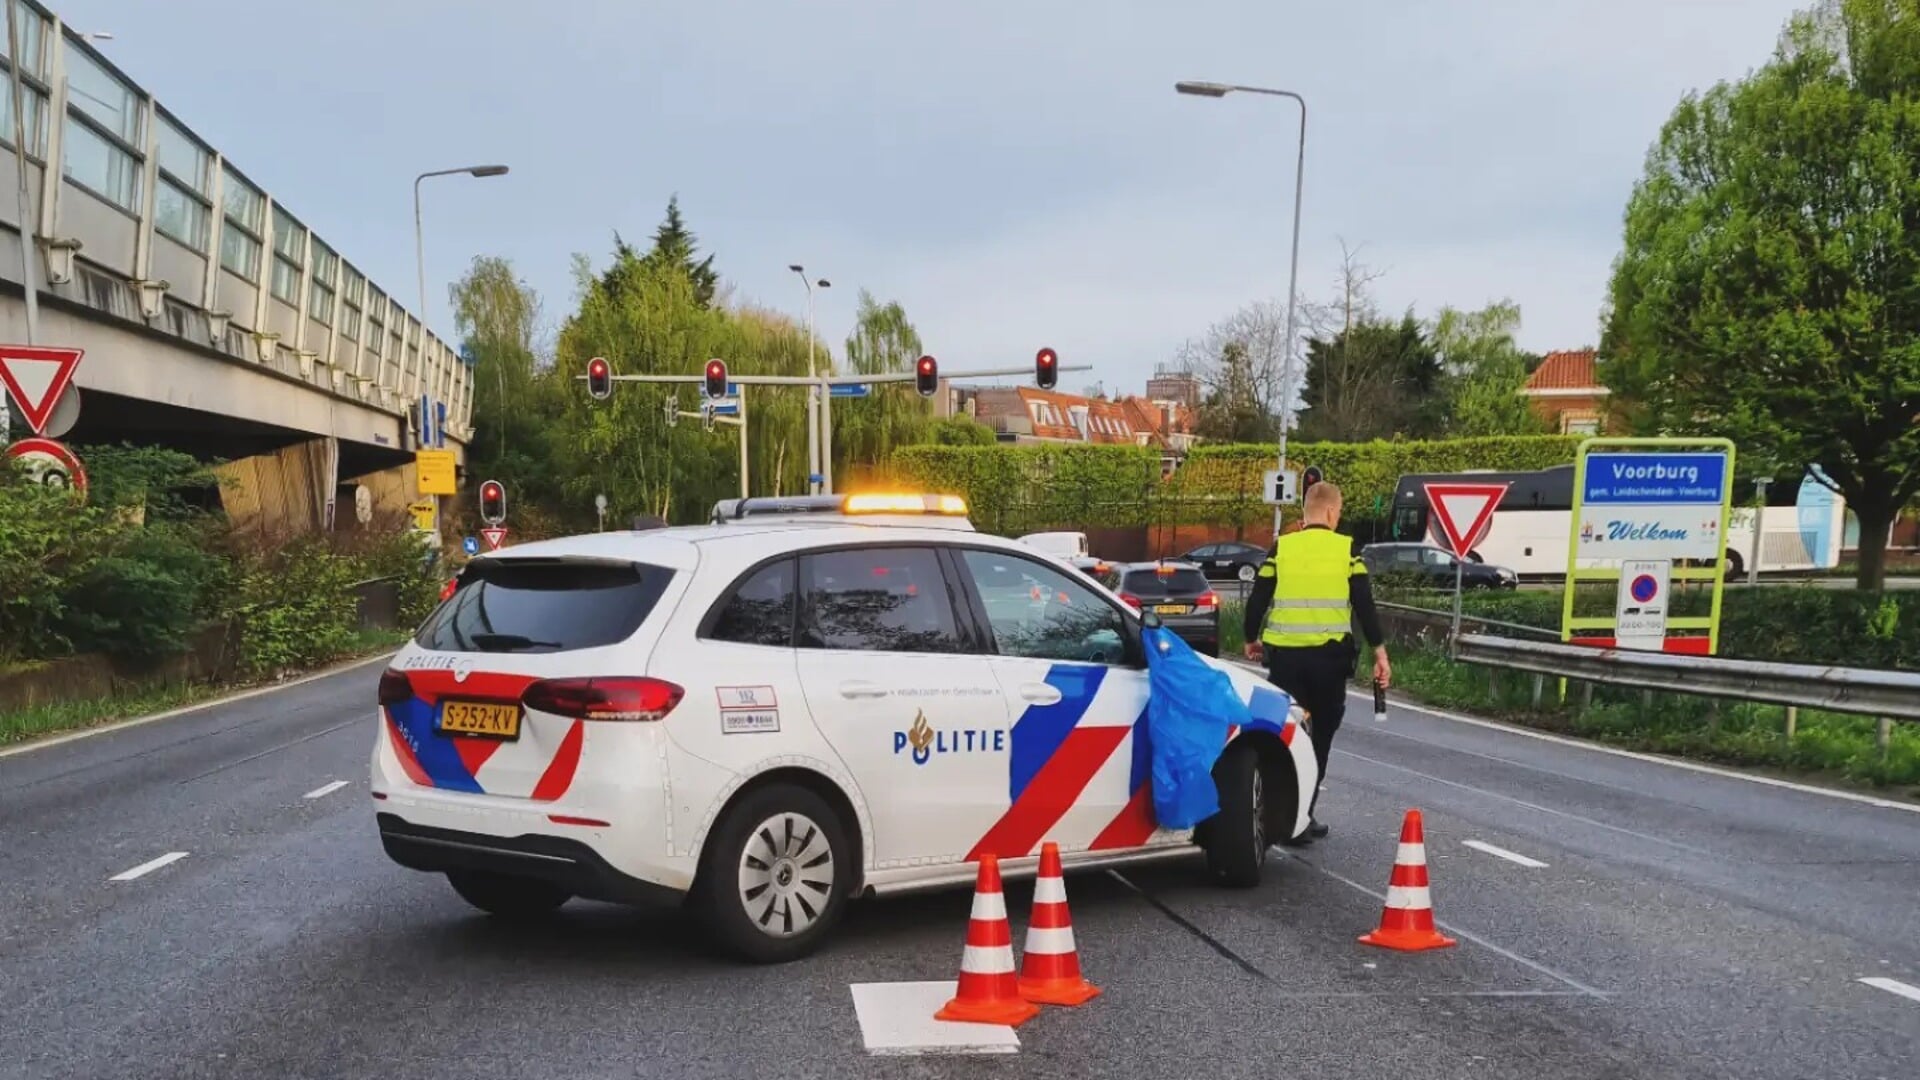 Alcoholcontrole op de afrit Voorburg van de A12 (foto: Facebook politie LV).